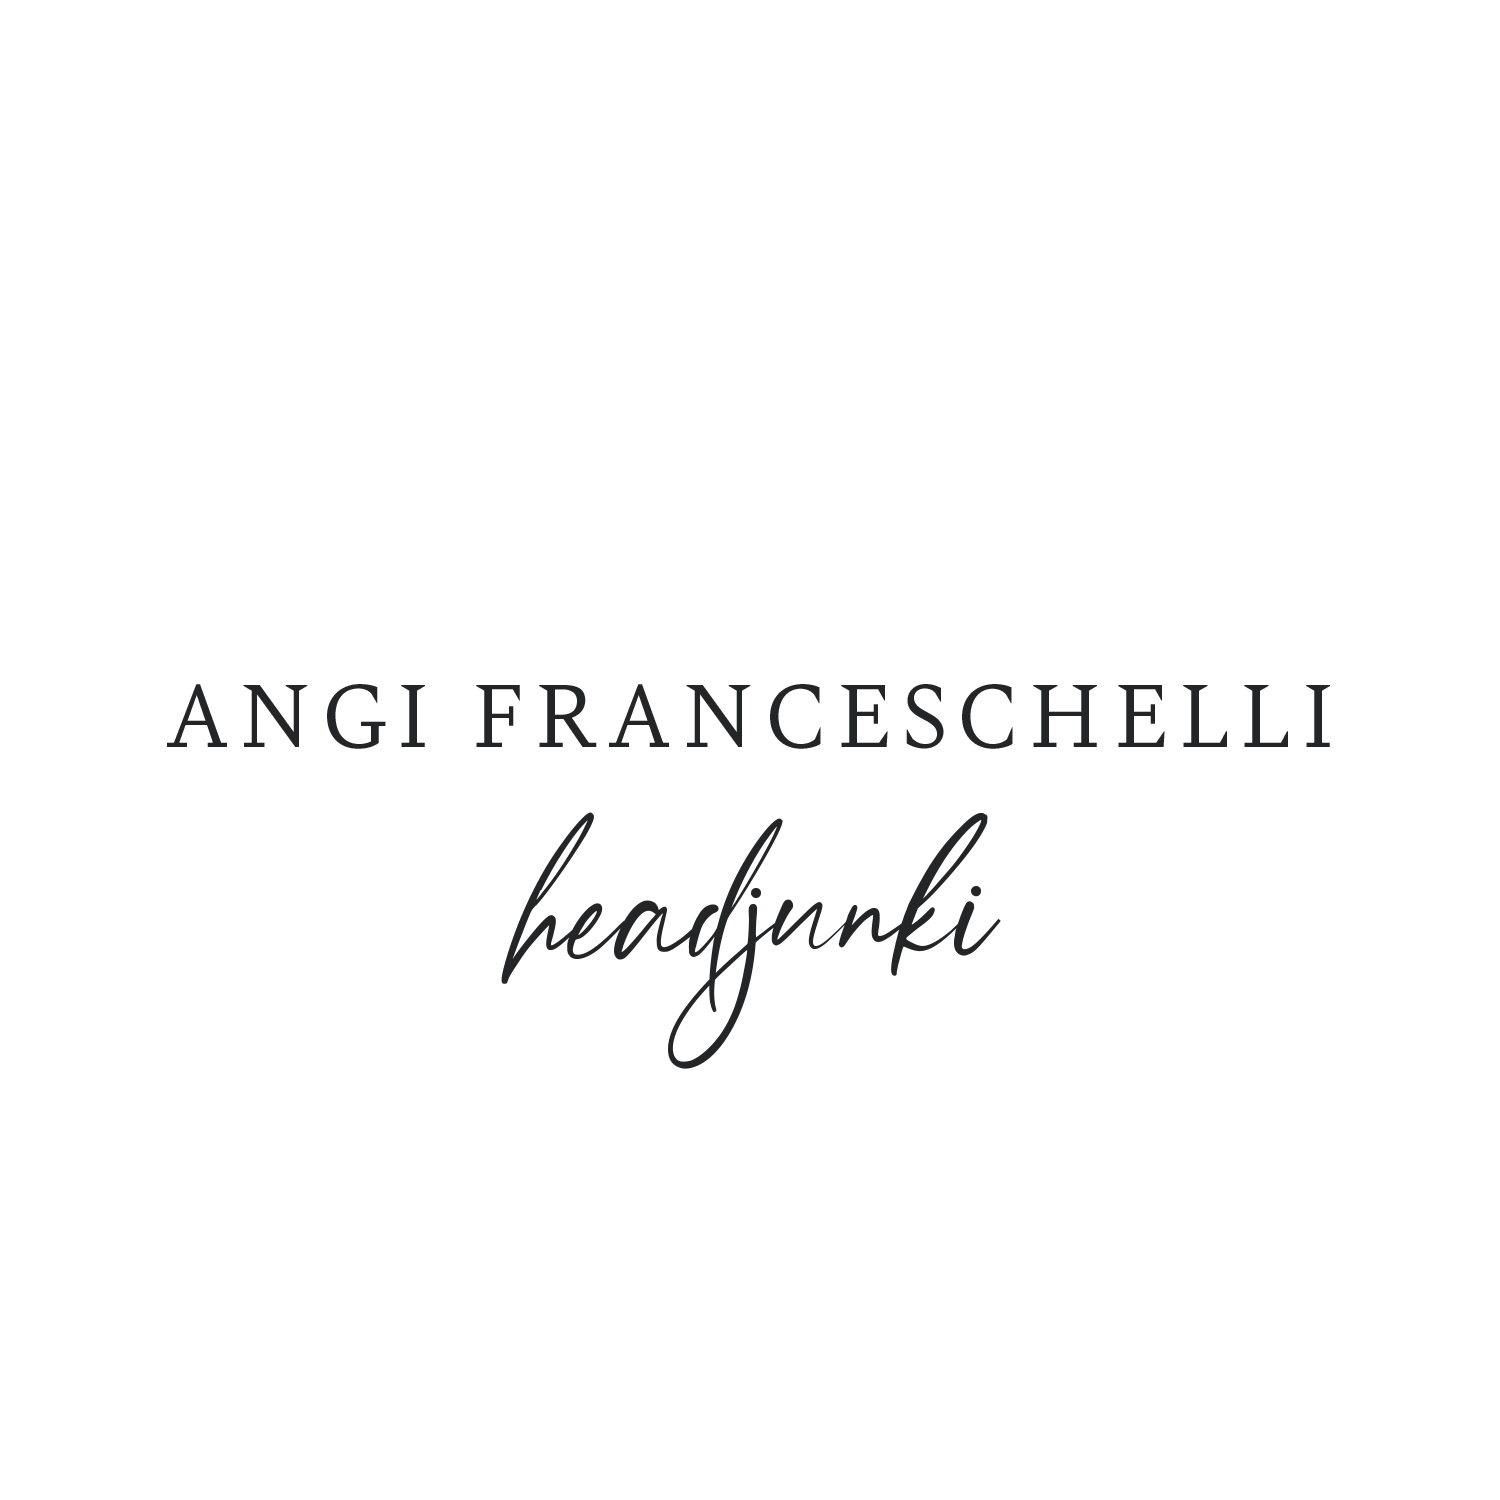 Angi Franceschelli